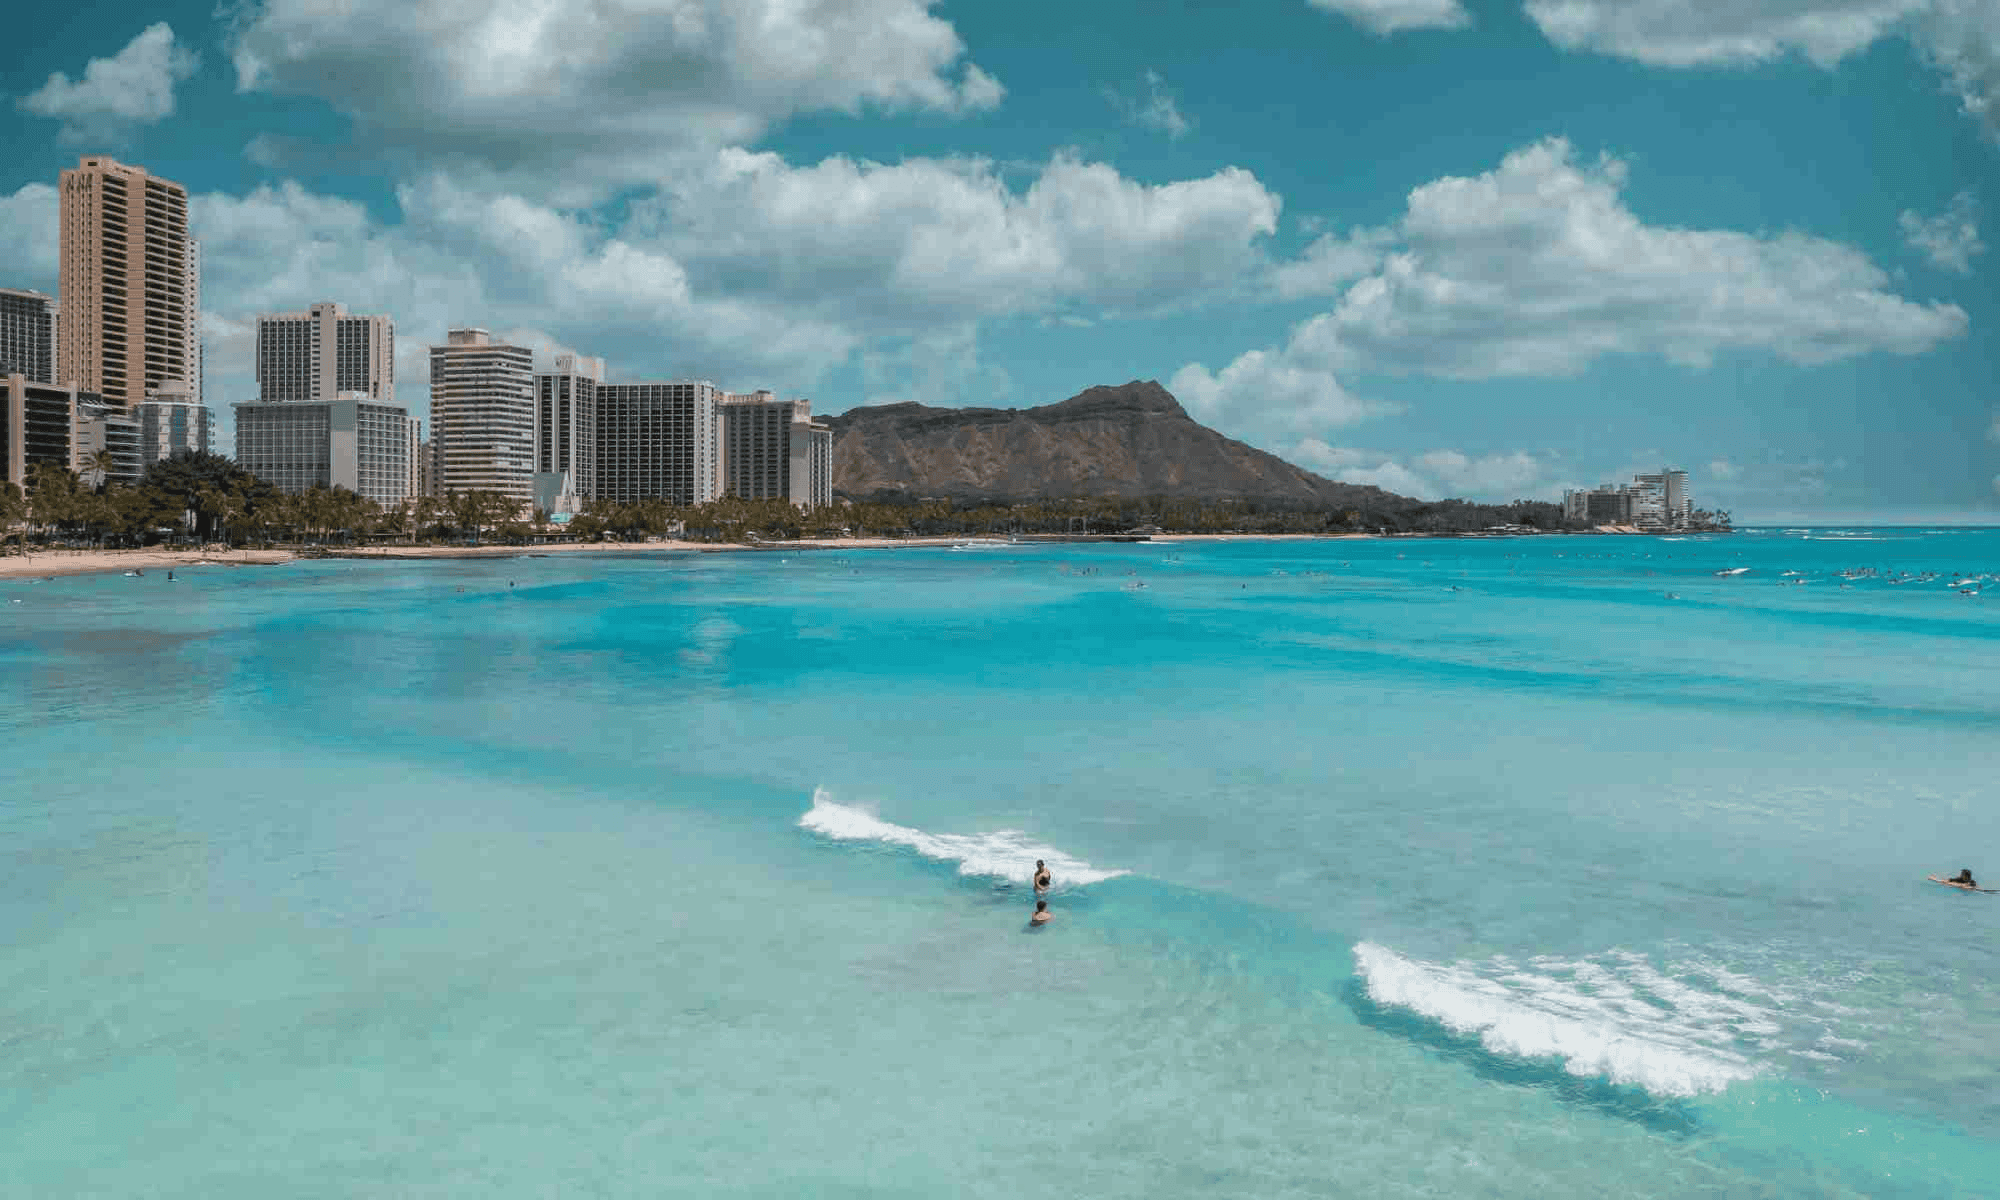 Waikiki Beach surfers